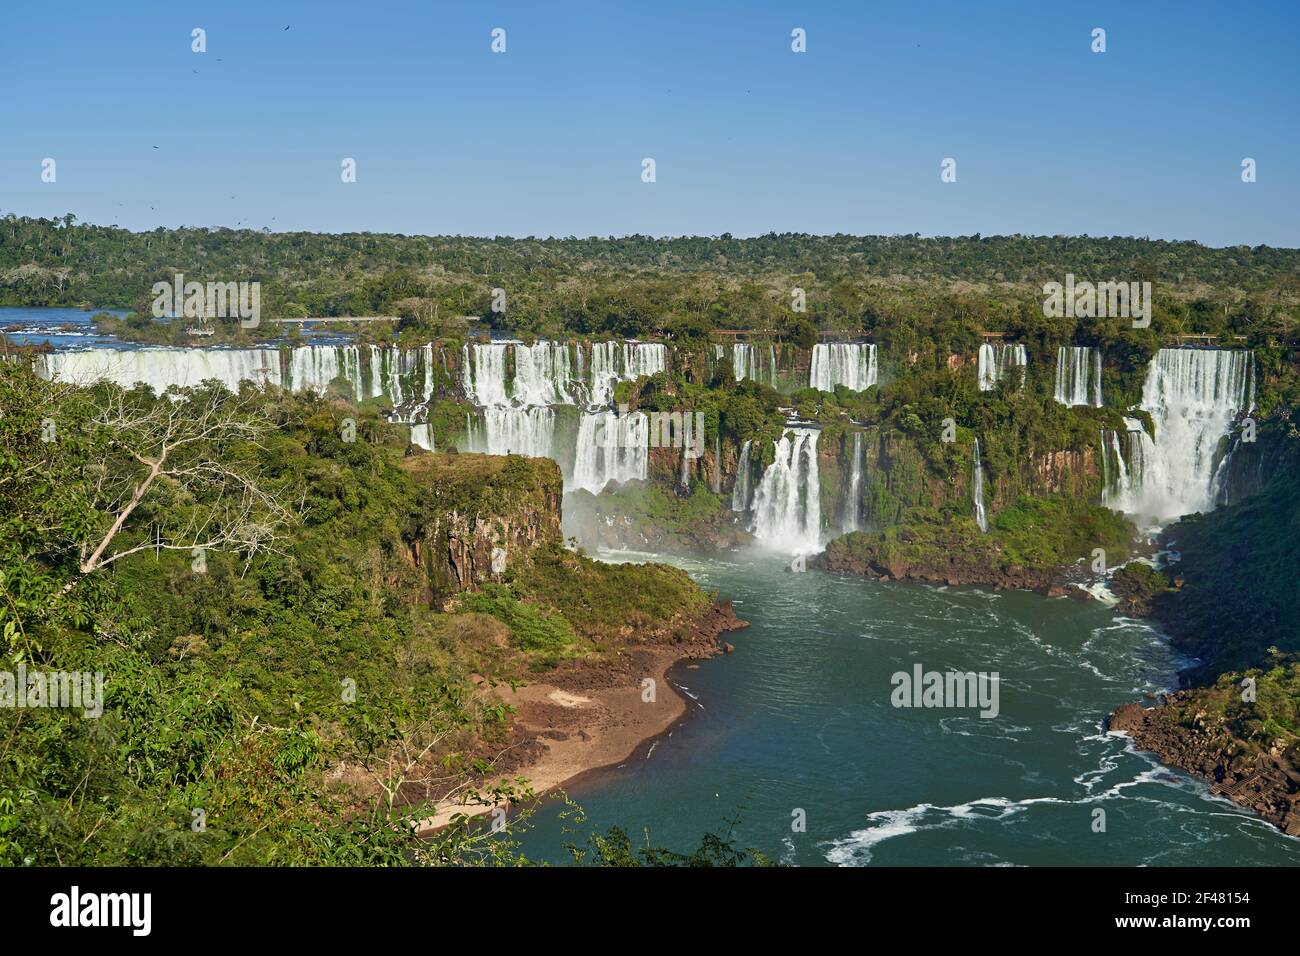 Las Cataratas de Iguazú o Cataratas de Iguazú, en la frontera de Argentina y Brasil, son la cascada más grande del mundo. Cascada muy alta con agua blanca en b Foto de stock